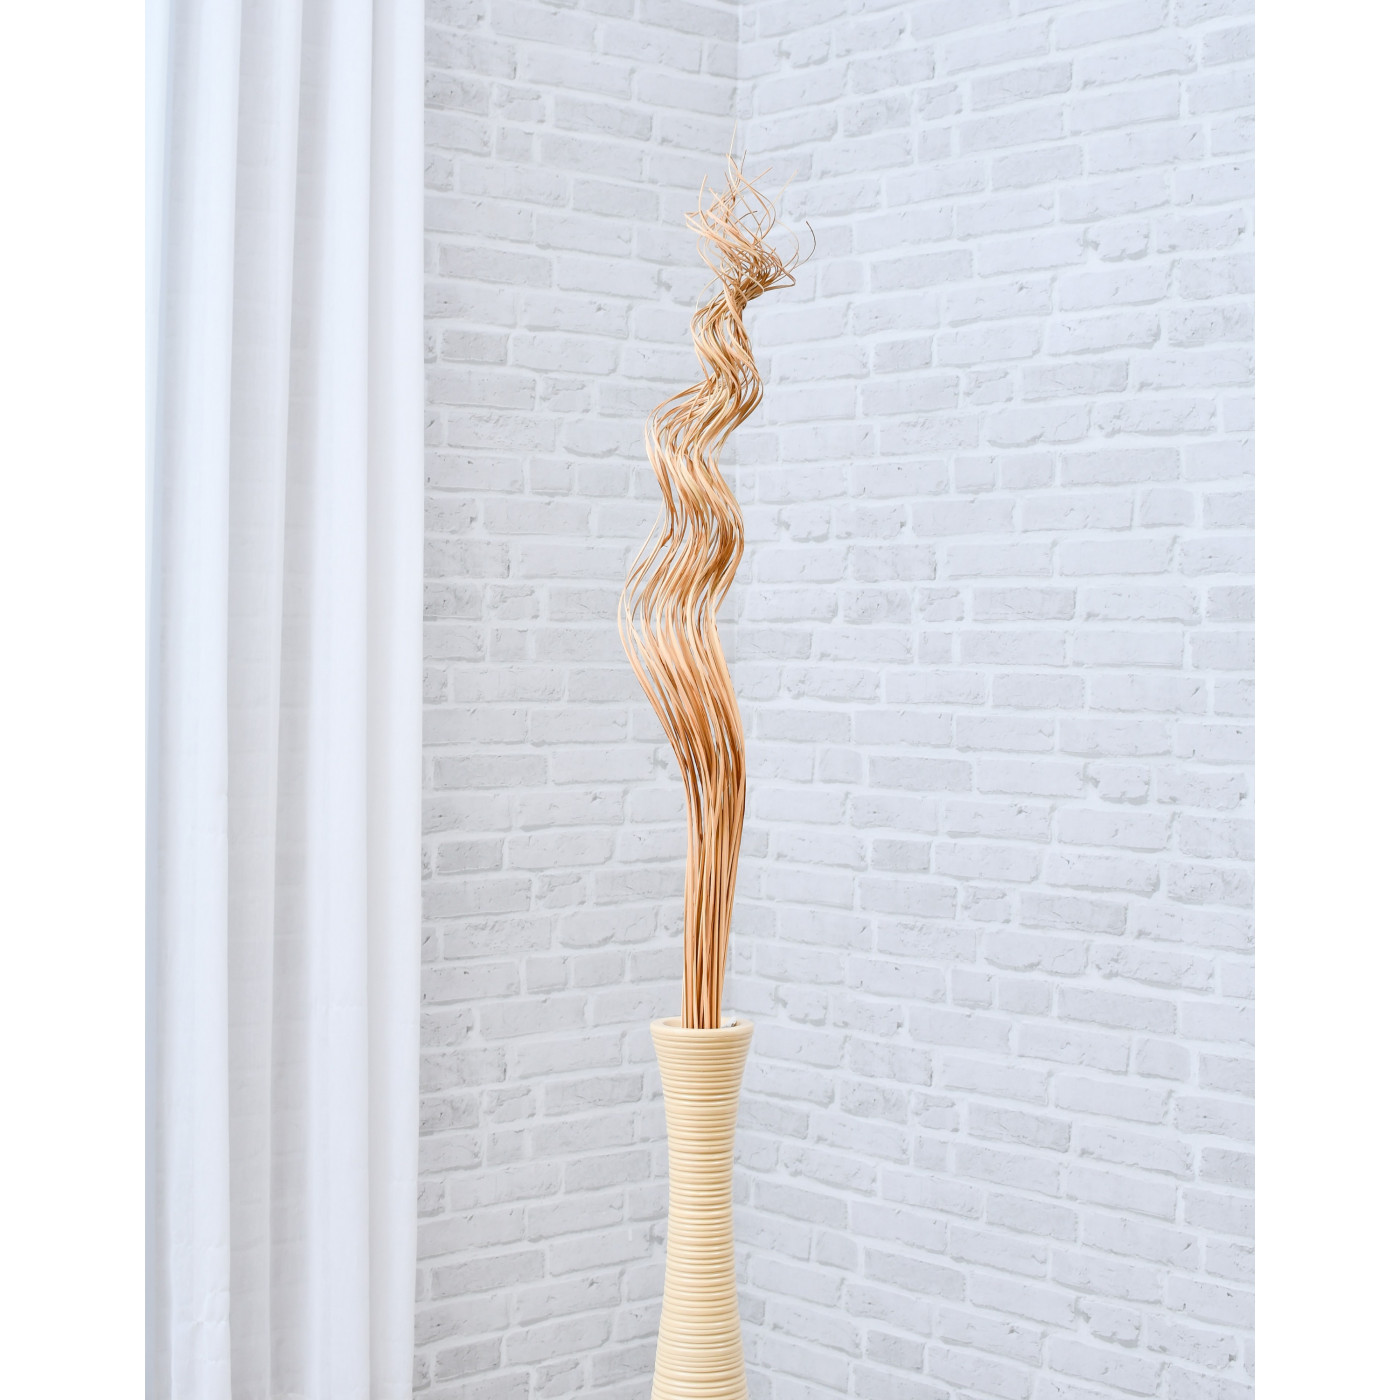 Leewadee mazzo di rami essiccati: fascio con rami decorativi per